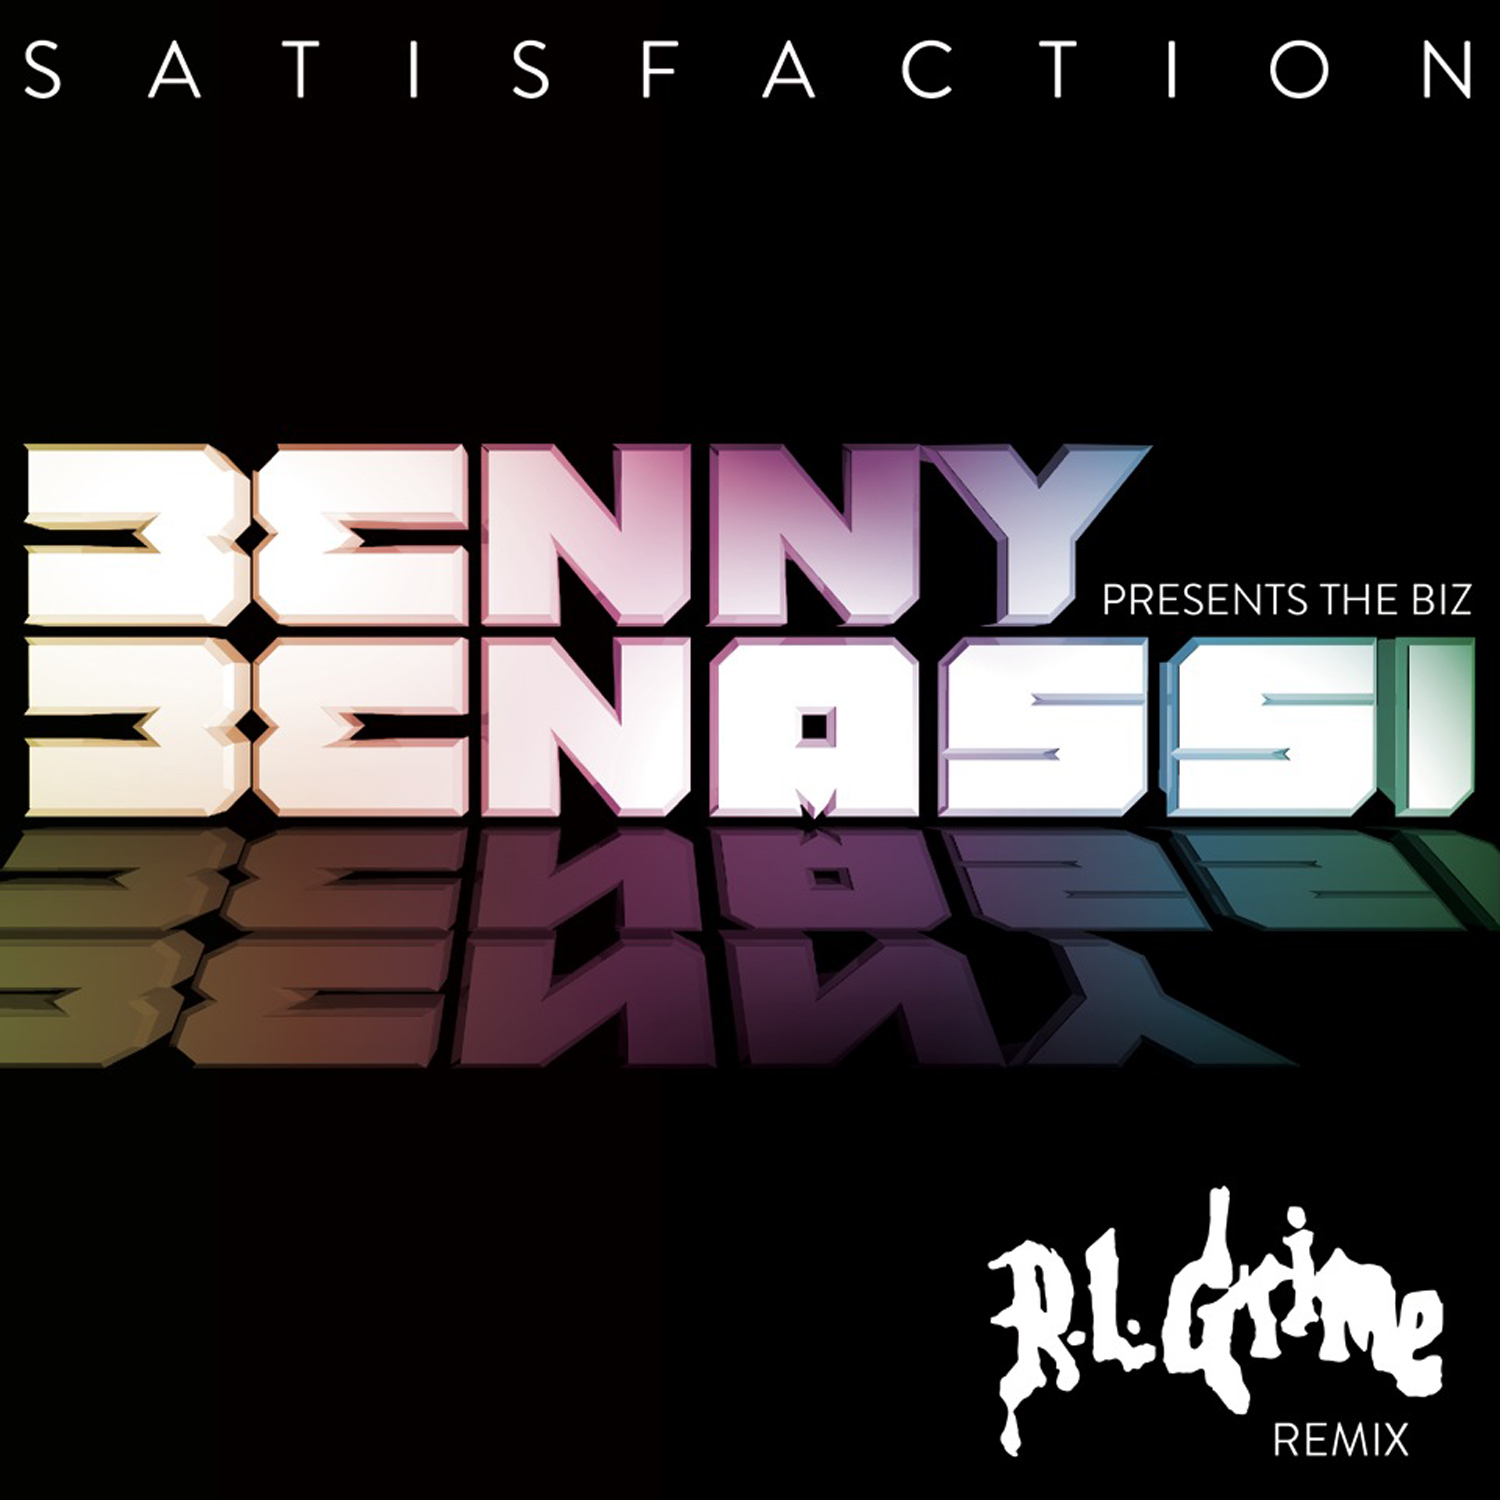 ڊائون لو Satisfaction (RL Grime Remix) - Benny Benassi (Preview)